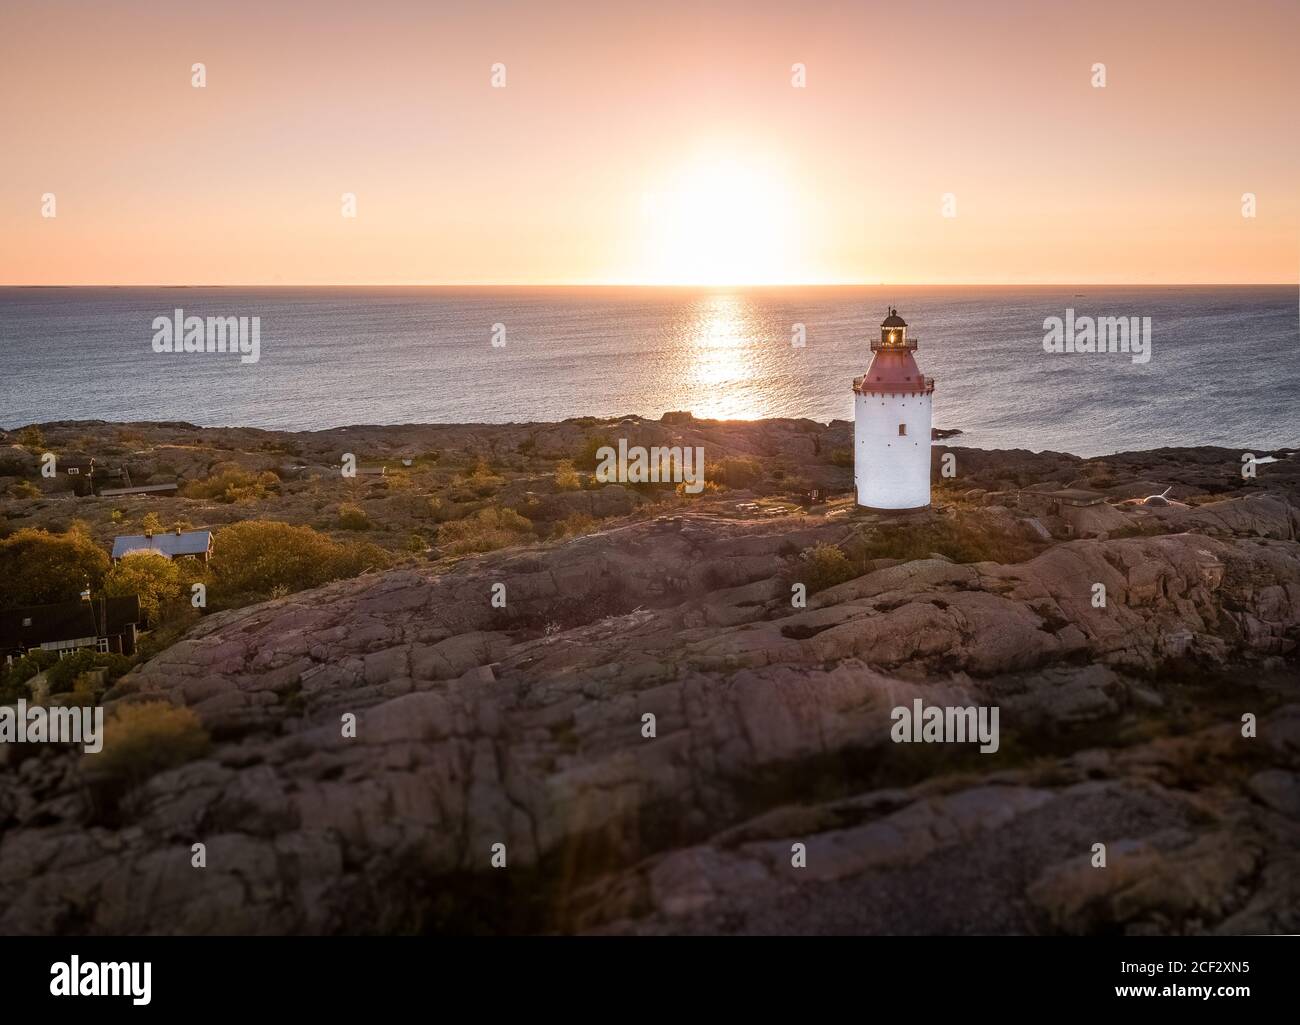 Landsort est le nom d'un phare sur l'île d'Öja. Le petit village est l'une des destinations les plus populaires de l'archipel de Stockholm. Banque D'Images